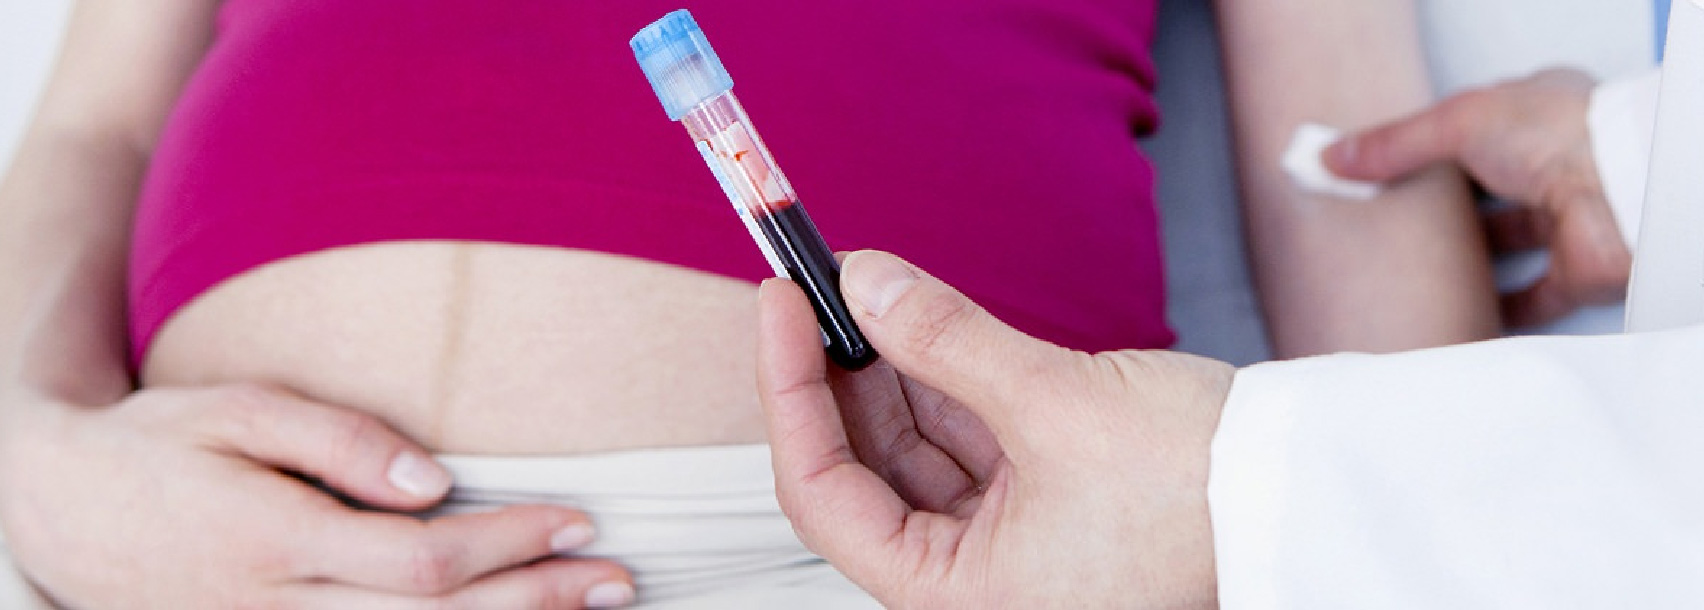 آزمایش خون مادر در غربالگری سه ماهه اول بارداری